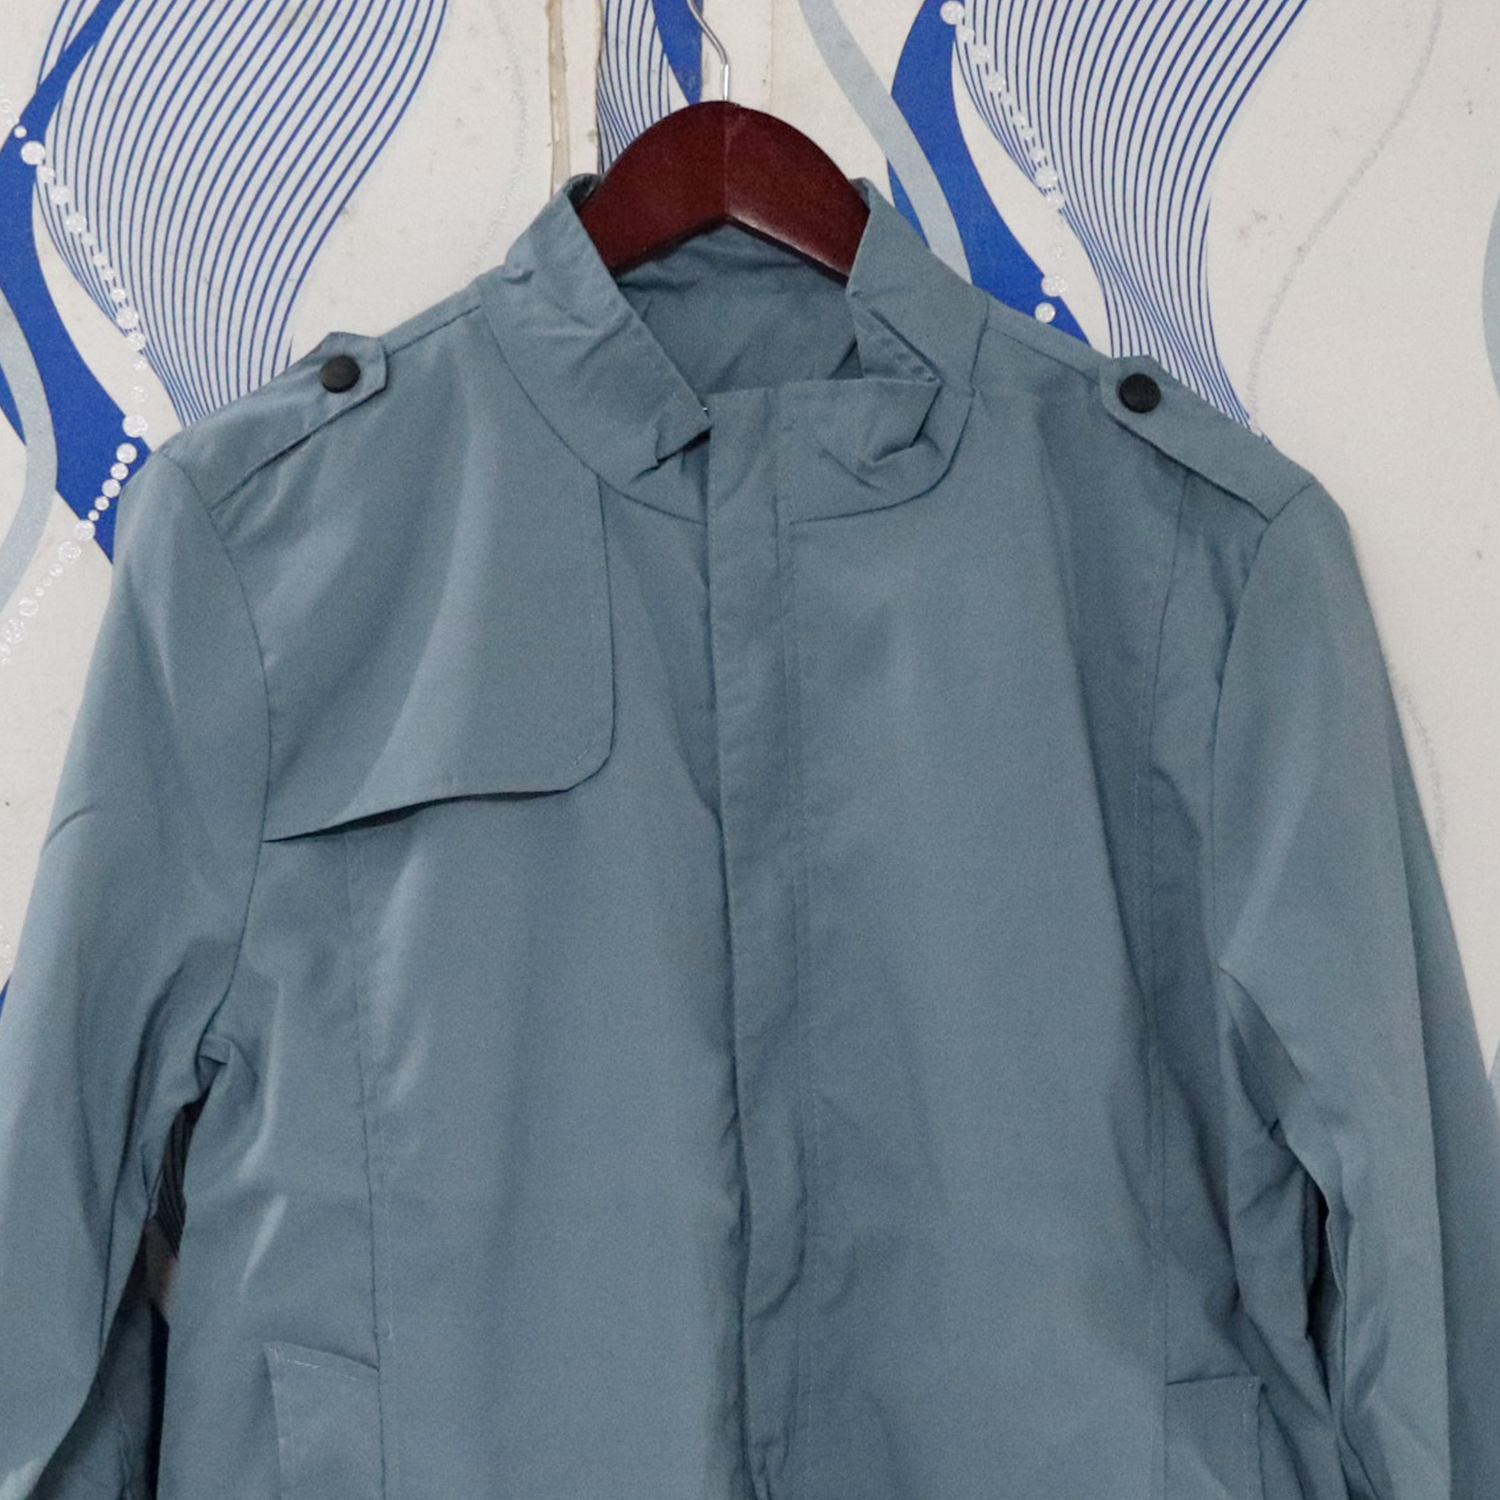 URSPORTTECH Men's Slim Fit Solid Color Bomber Jacket